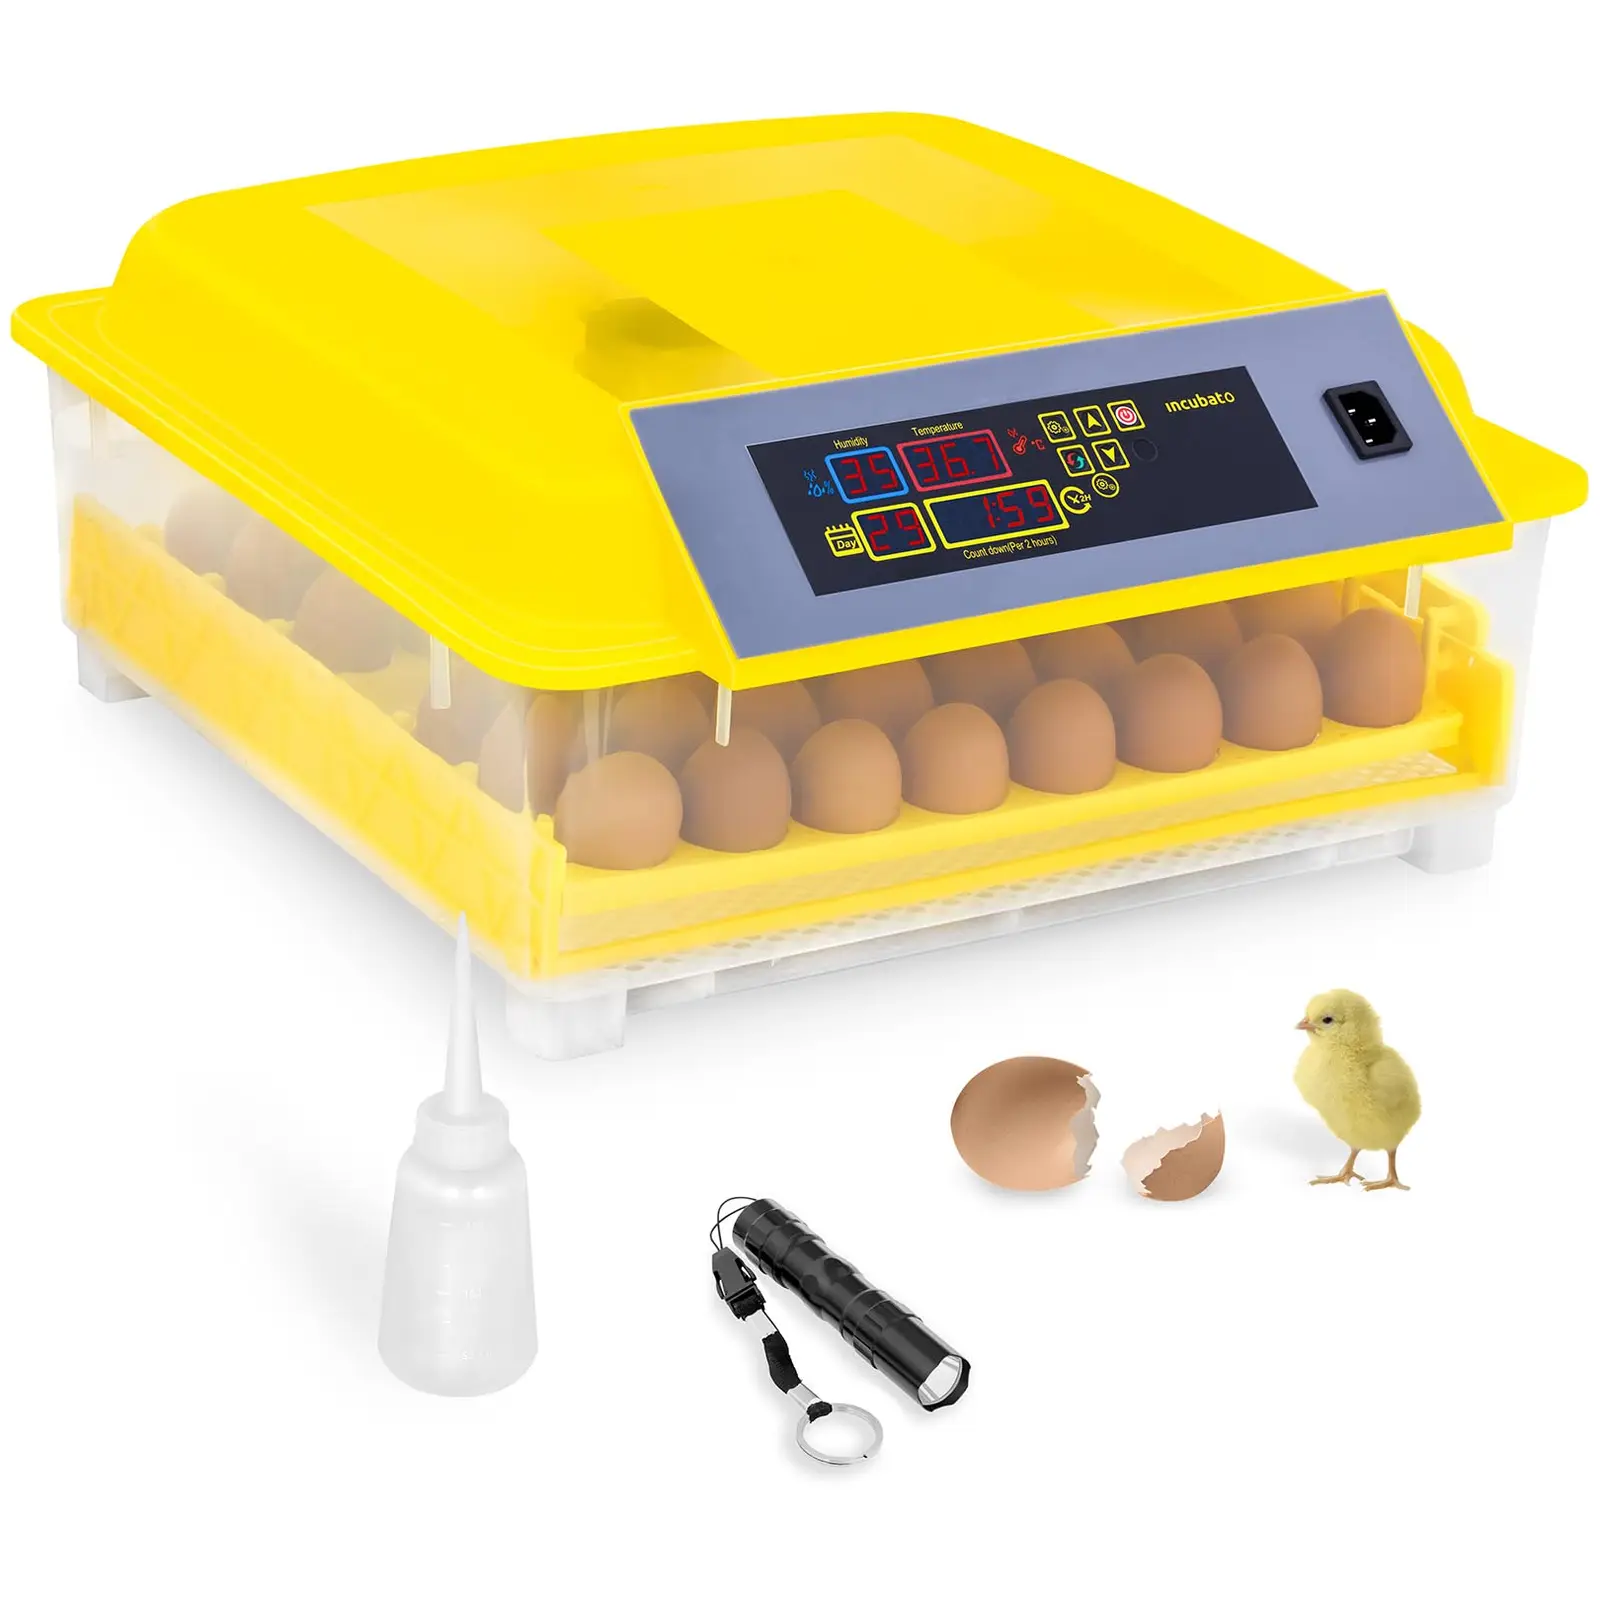 Hautomakone - 48 munaa - sis. läpivalaisulampun ja kostuttimen - täysautomaattinen